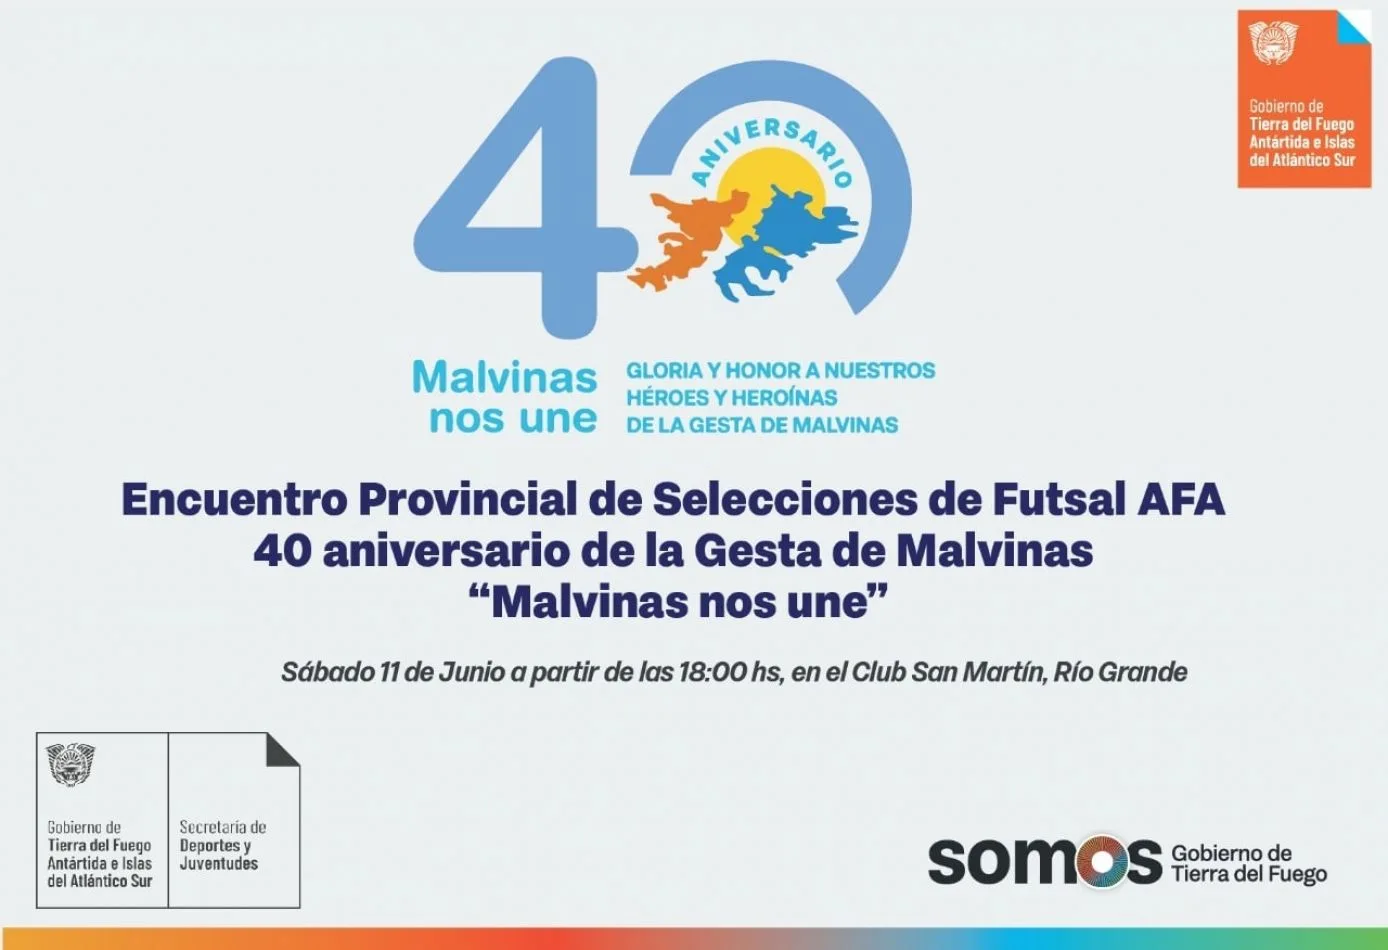 Encuentro Provincial de Selecciones de Futsal AFA “Malvinas nos une”